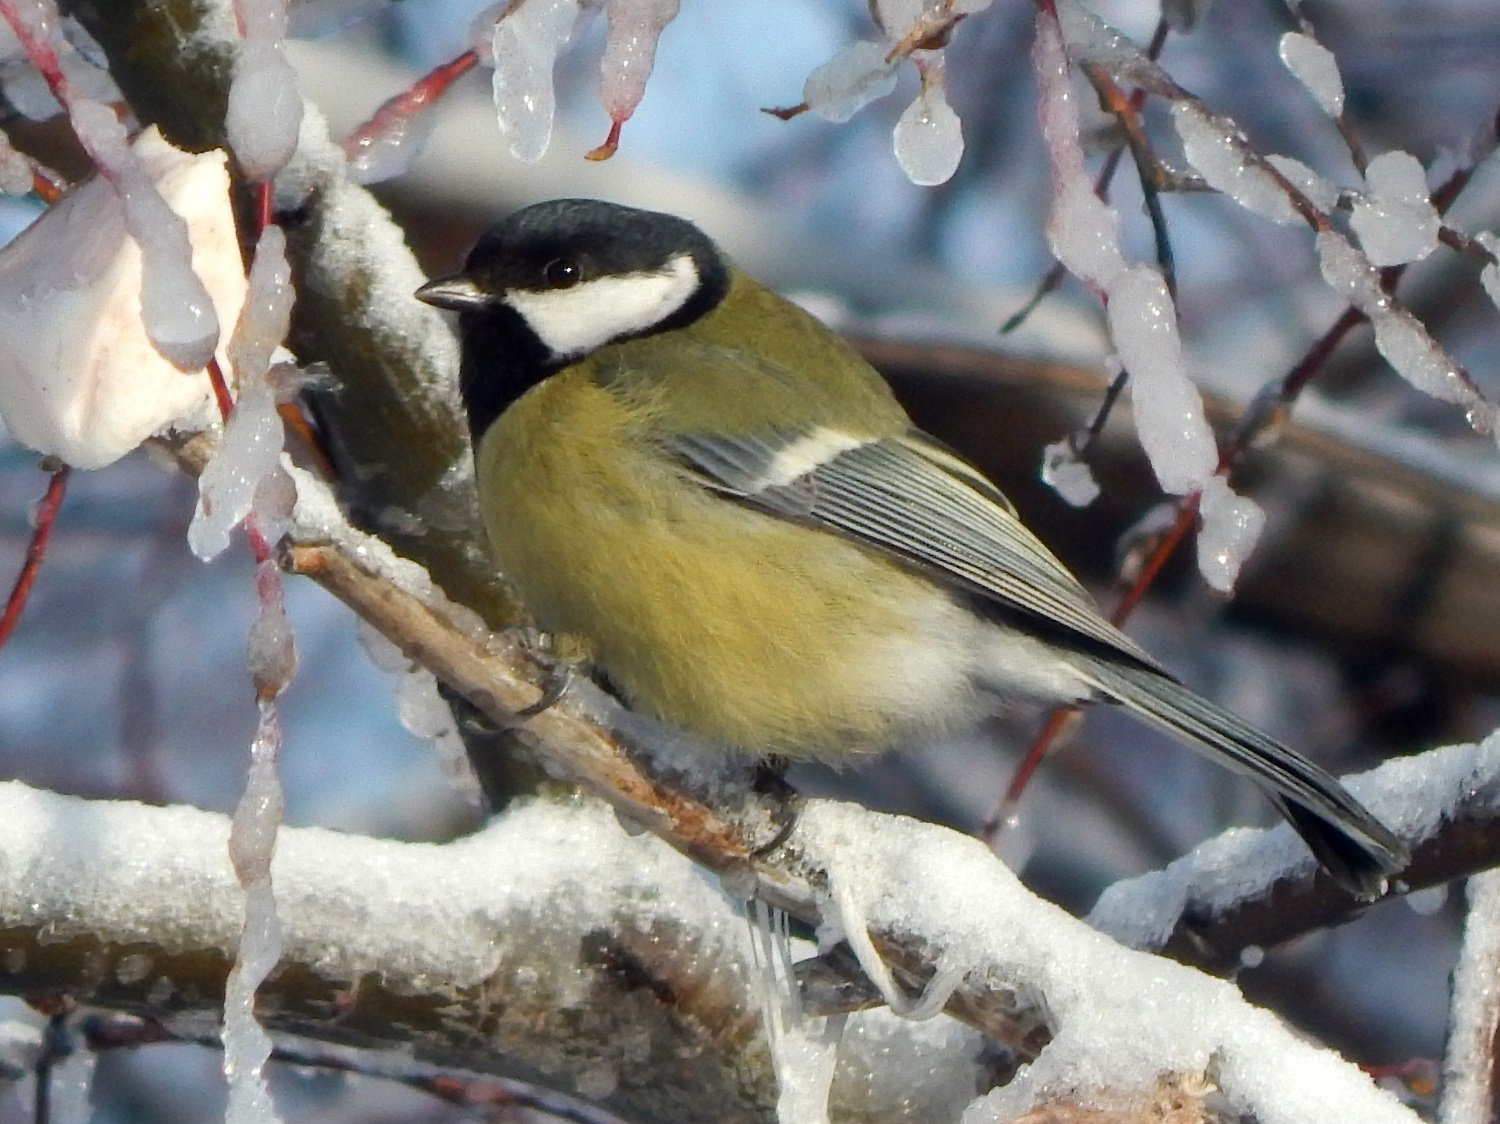 Птицы тверской области с названиями и фото зимующие